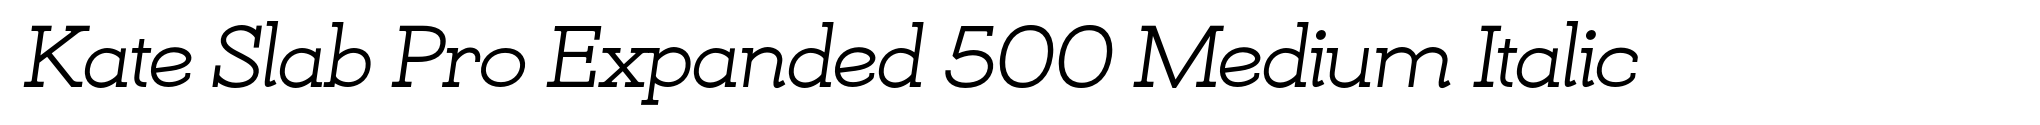 Kate Slab Pro Expanded 500 Medium Italic image